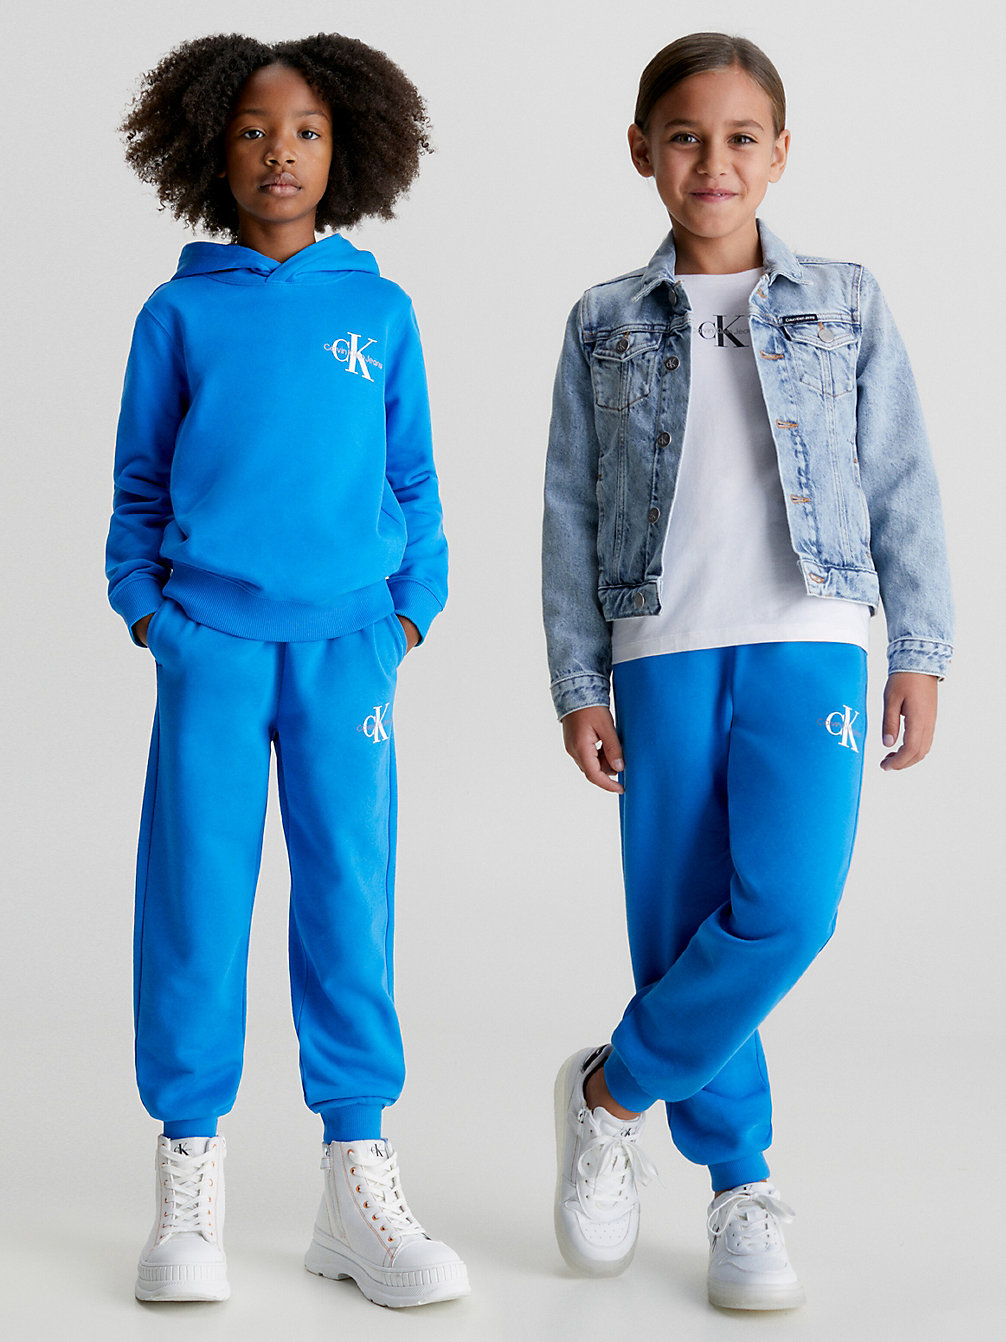 CORRIB RIVER BLUE Pantalon De Jogging Relaxed Pour Enfant undefined kids unisex Calvin Klein